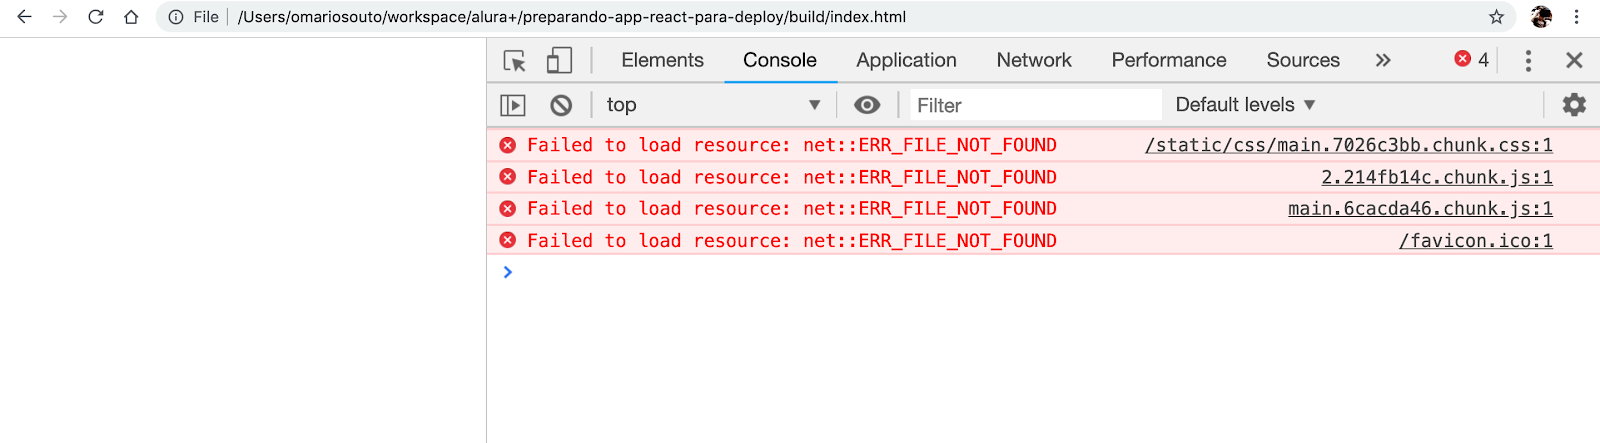 Projeto carregado via um servidor node com todos os redirects apontados para o index.html